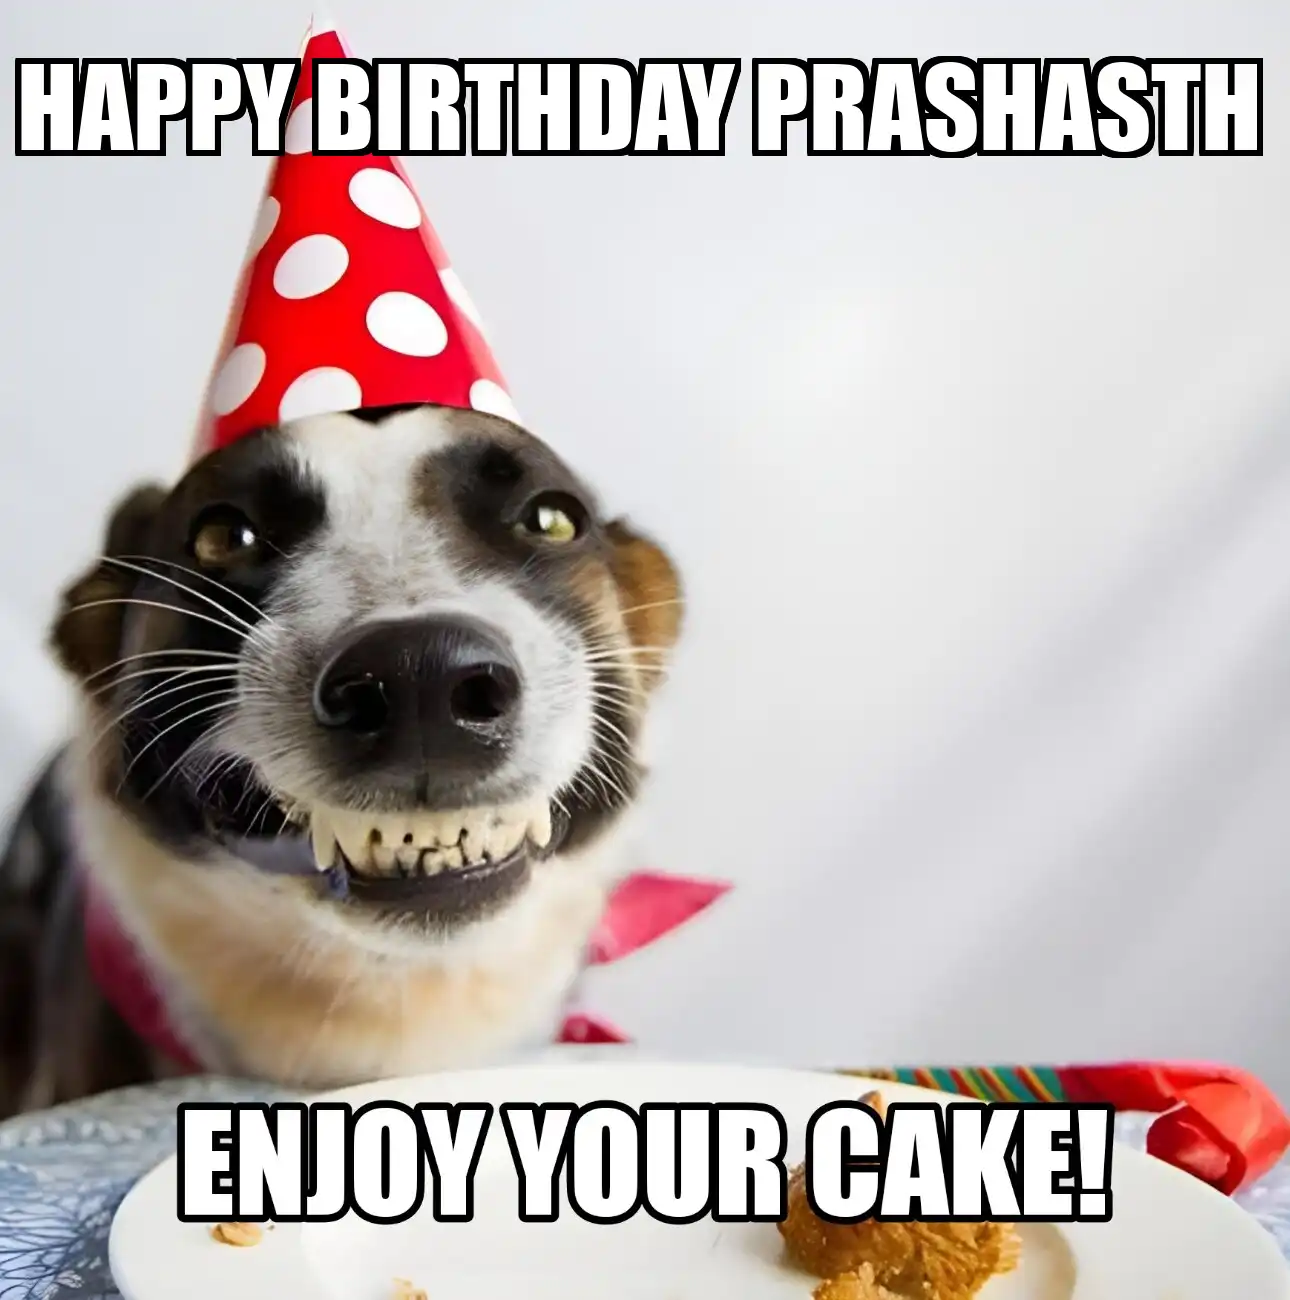 Happy Birthday Prashasth Enjoy Your Cake Dog Meme